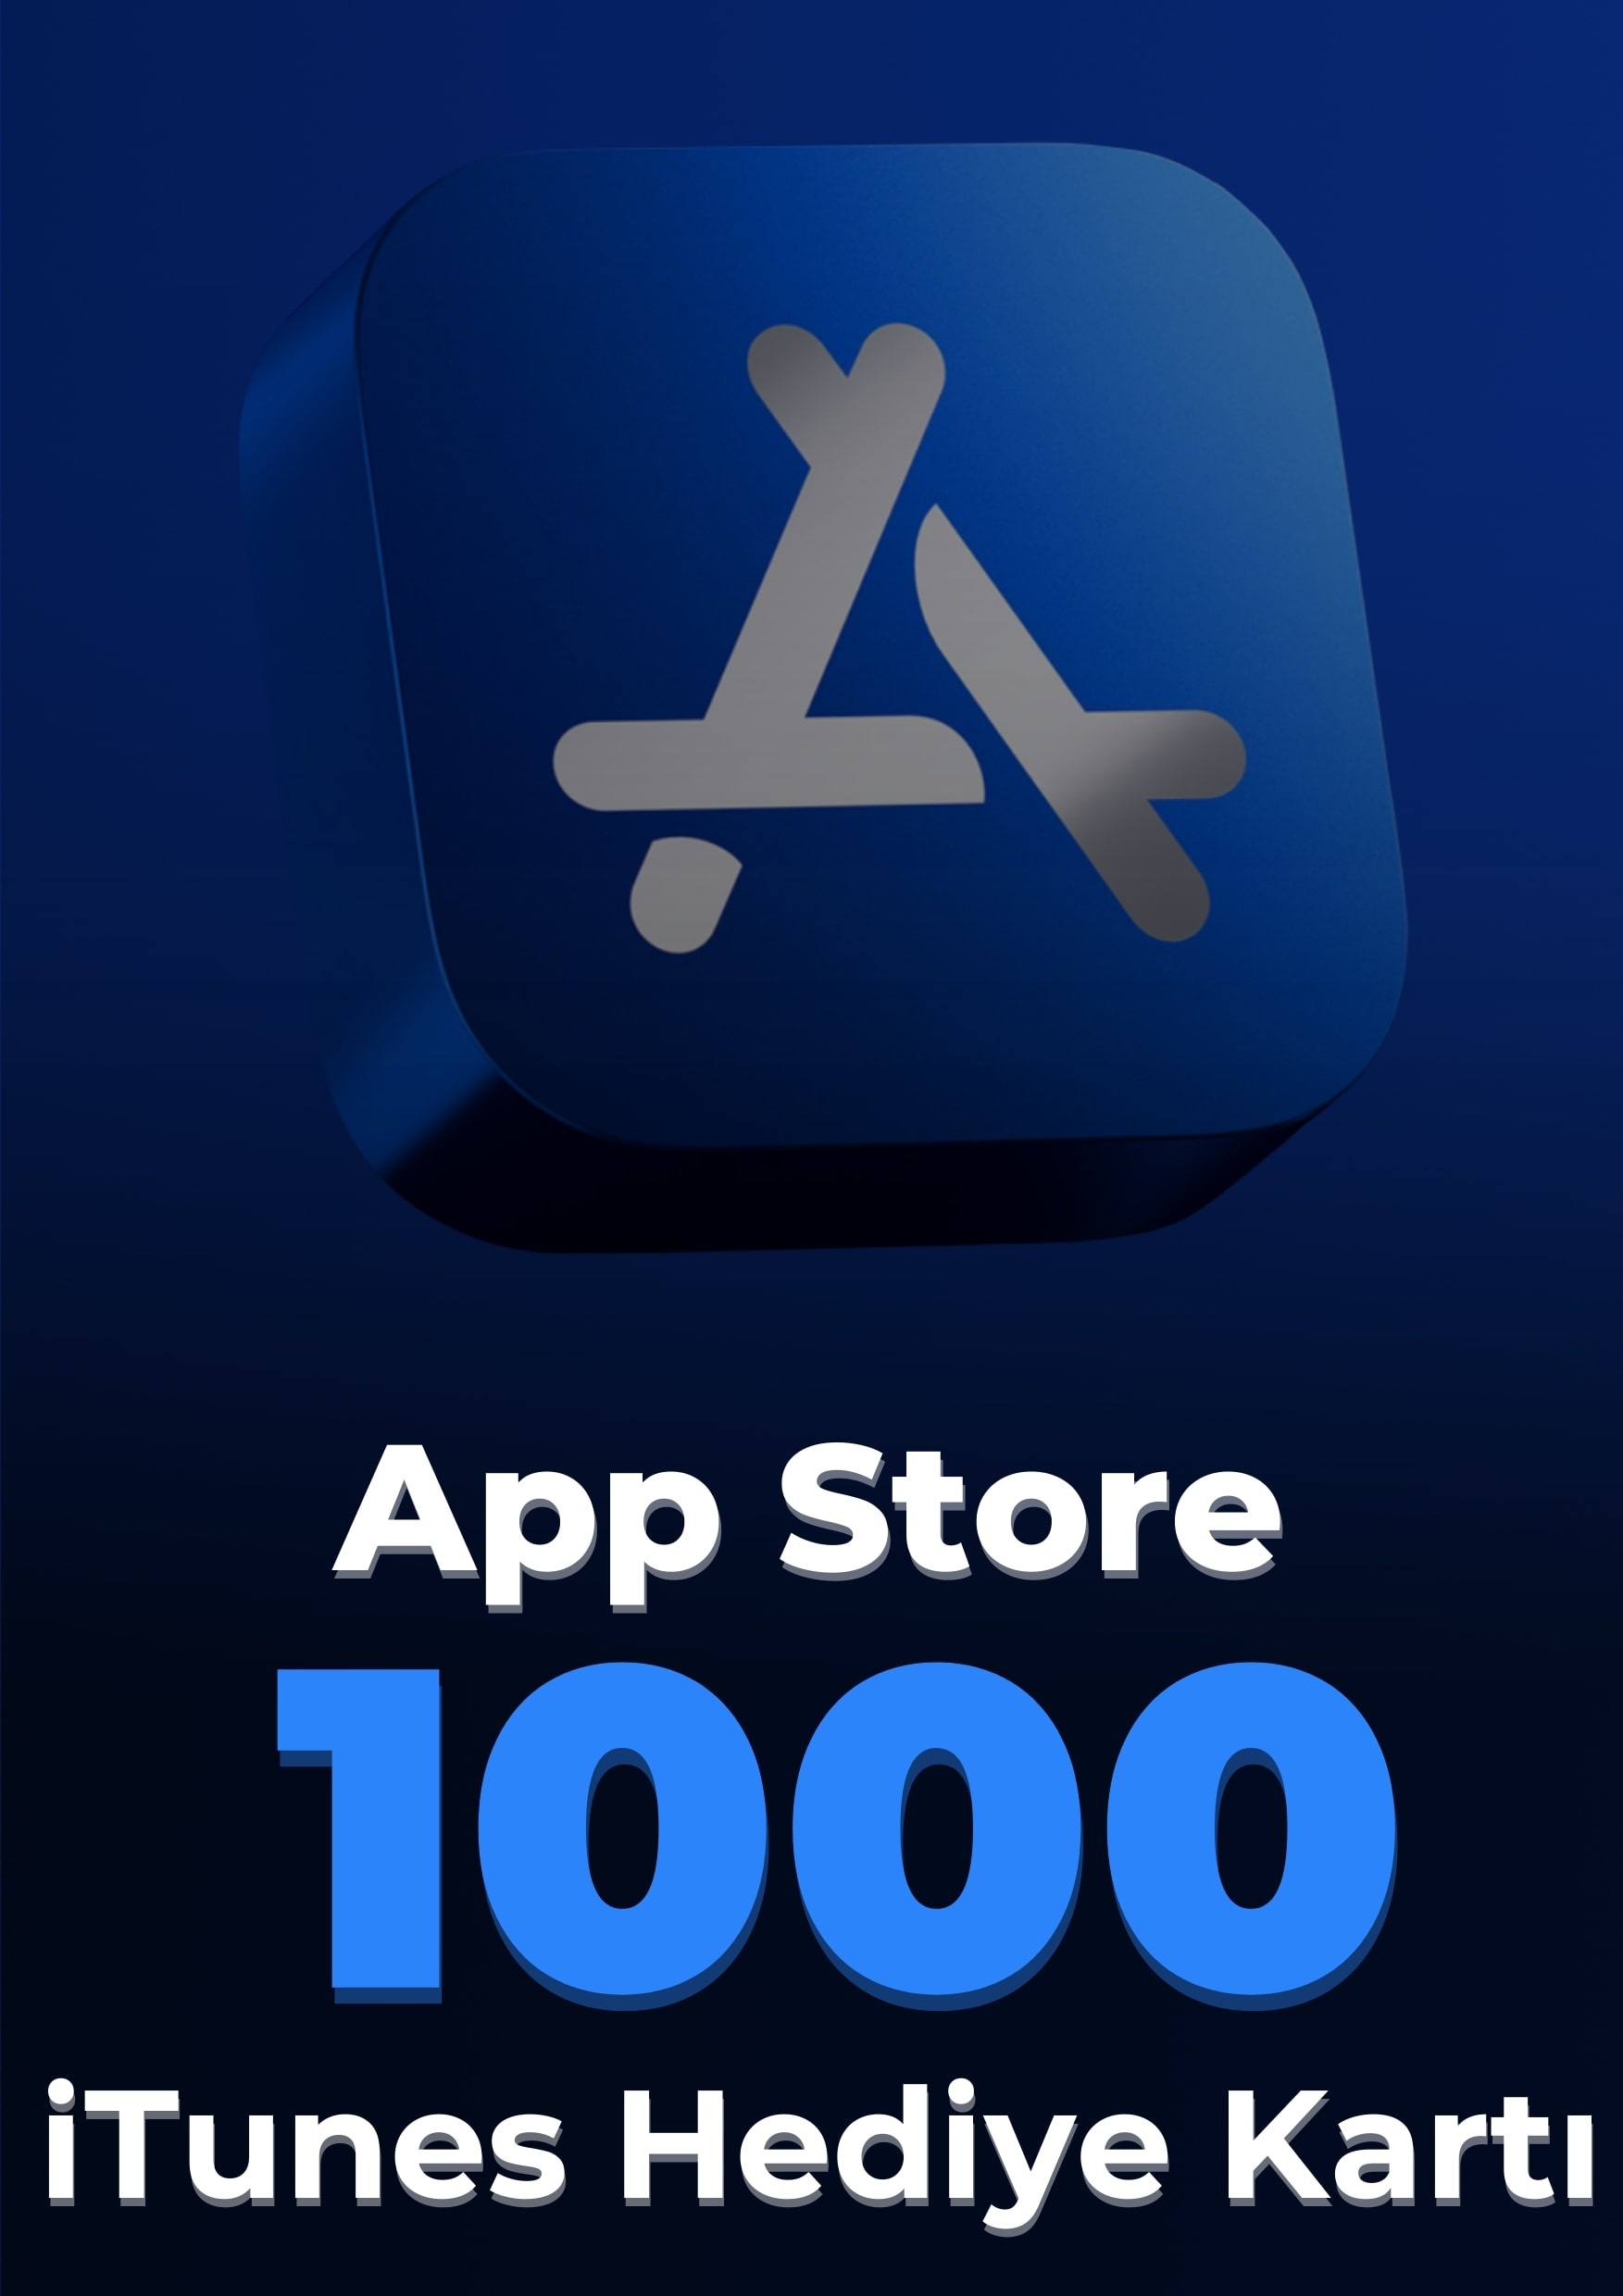 App Store iTunes 1000 TL